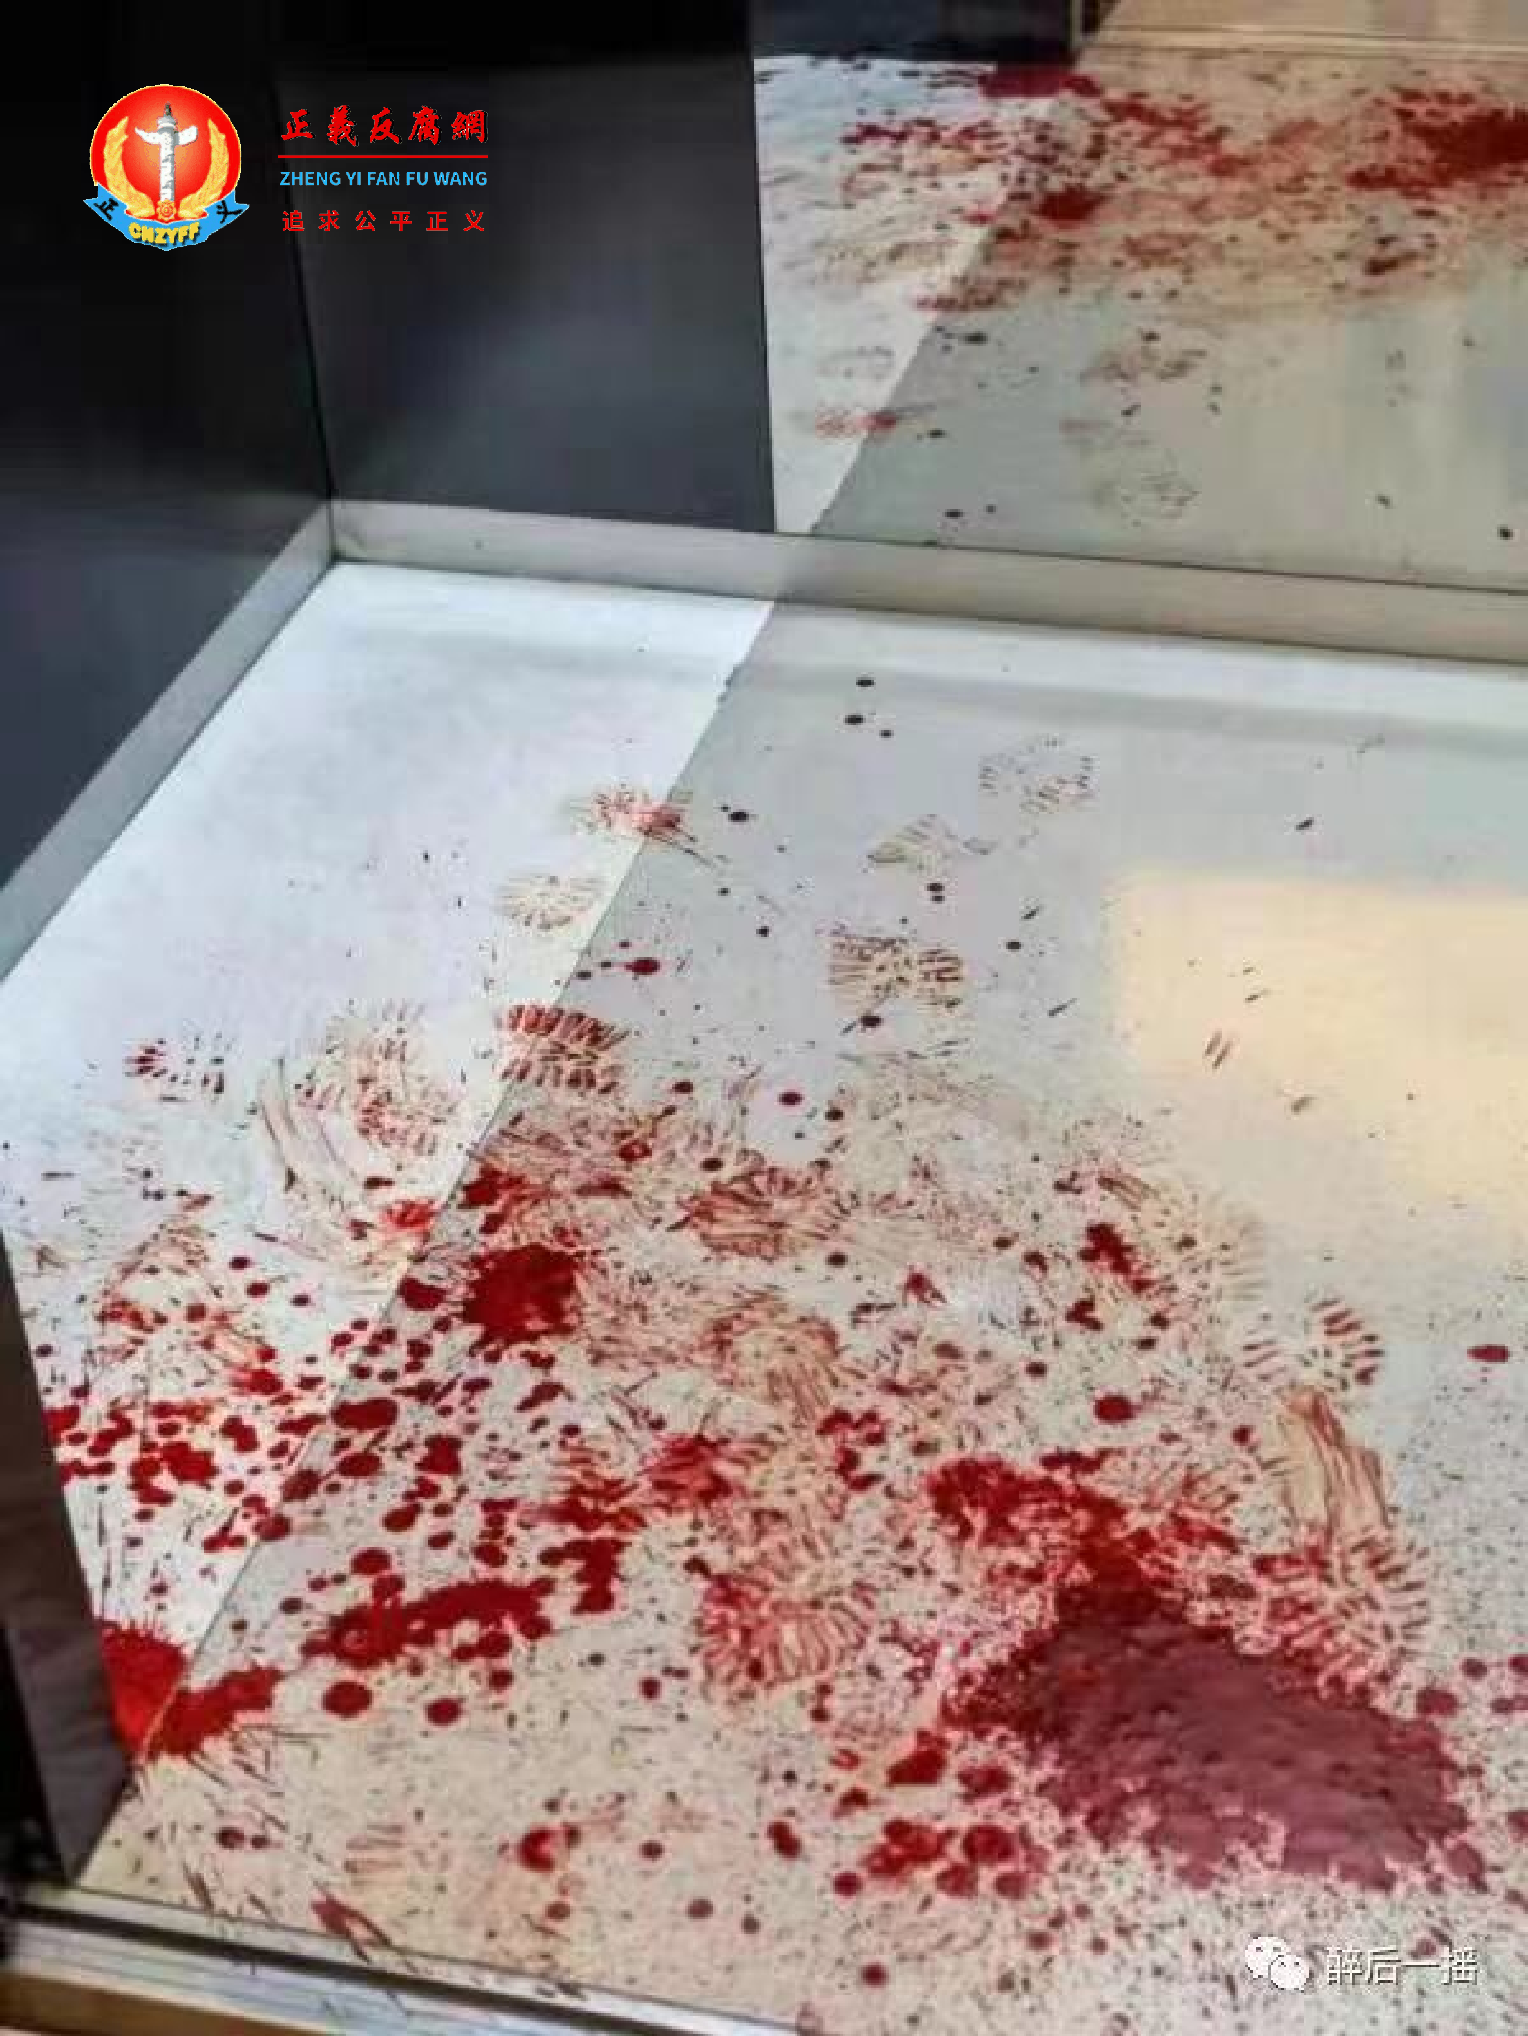 电梯内有大量血迹。.png